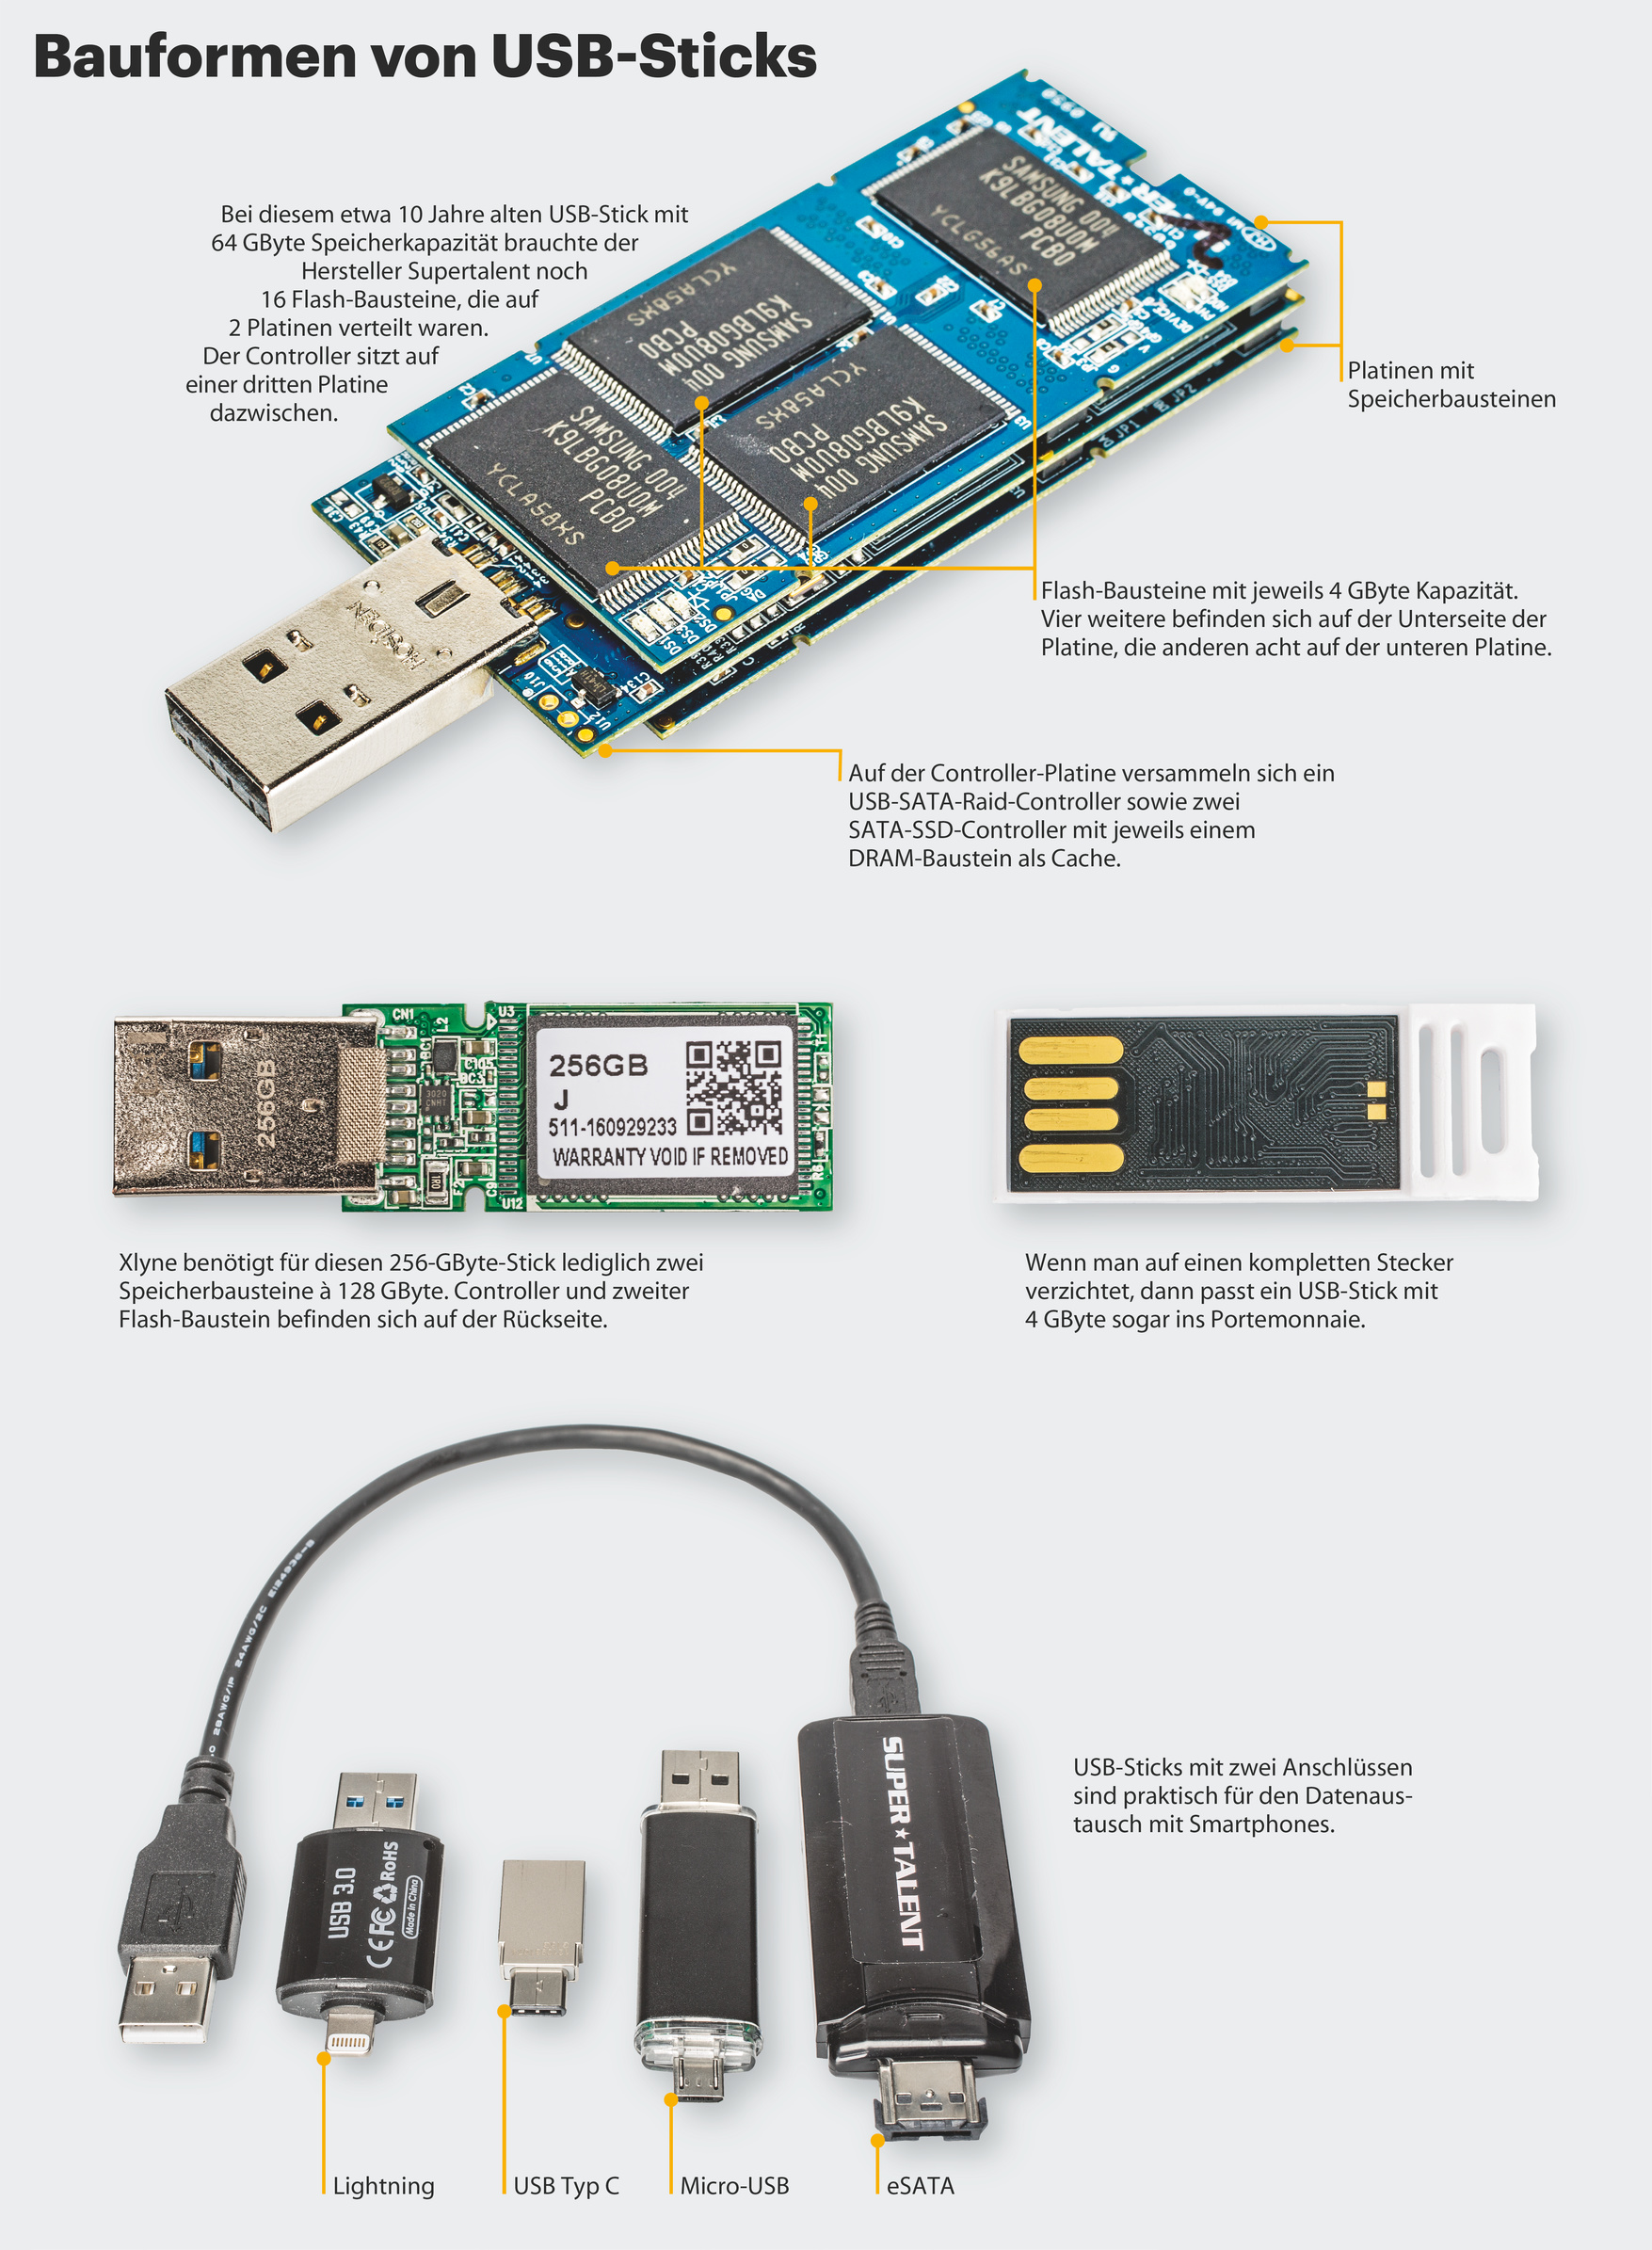 Grundlagen zu USB-Sticks | c't | Heise Magazine